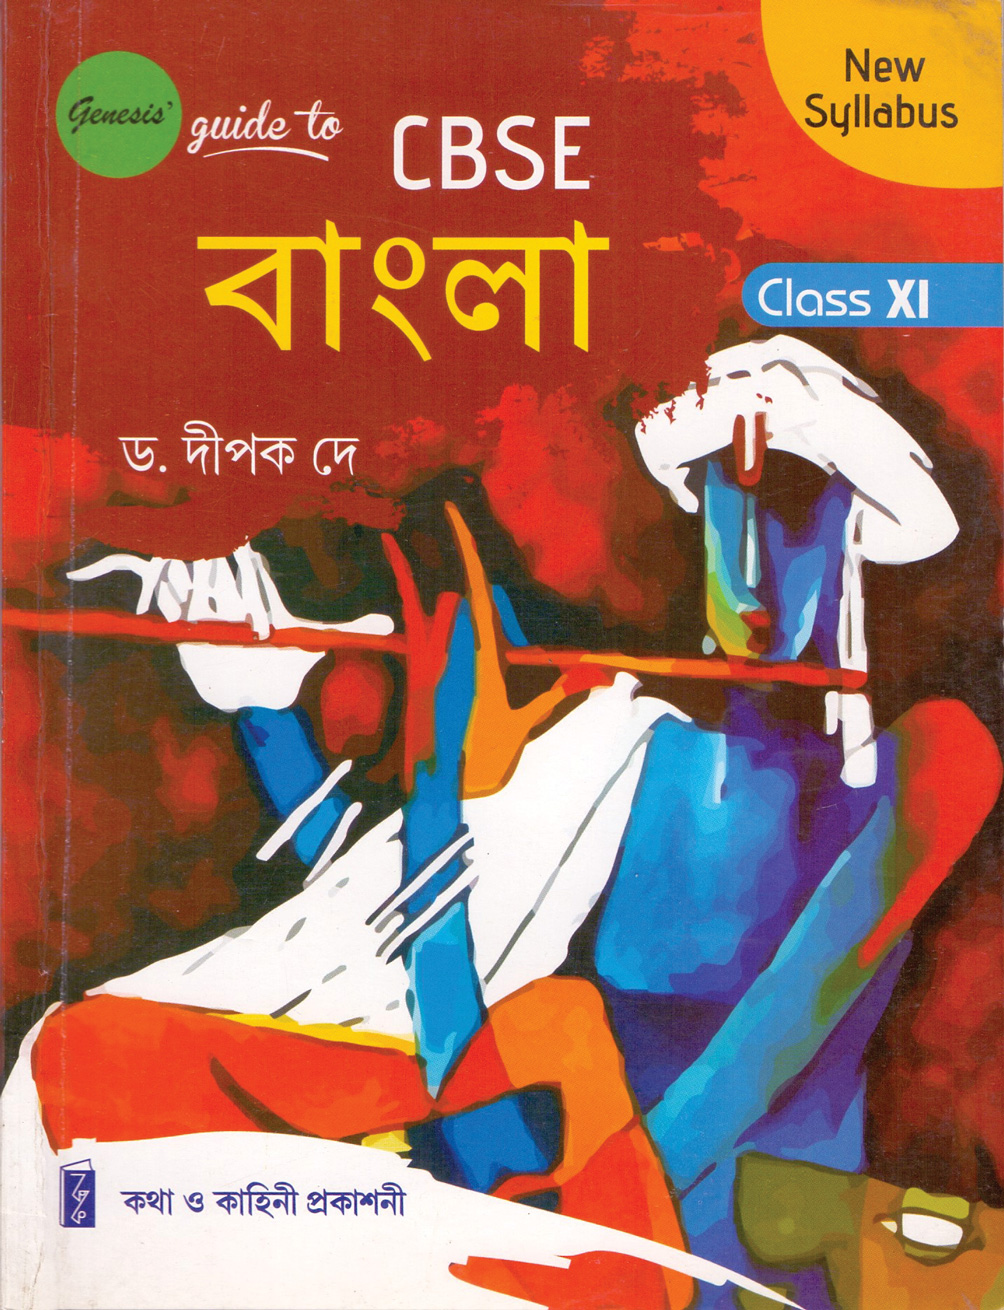 Genesis guide to CBSE Bangla_Class 11